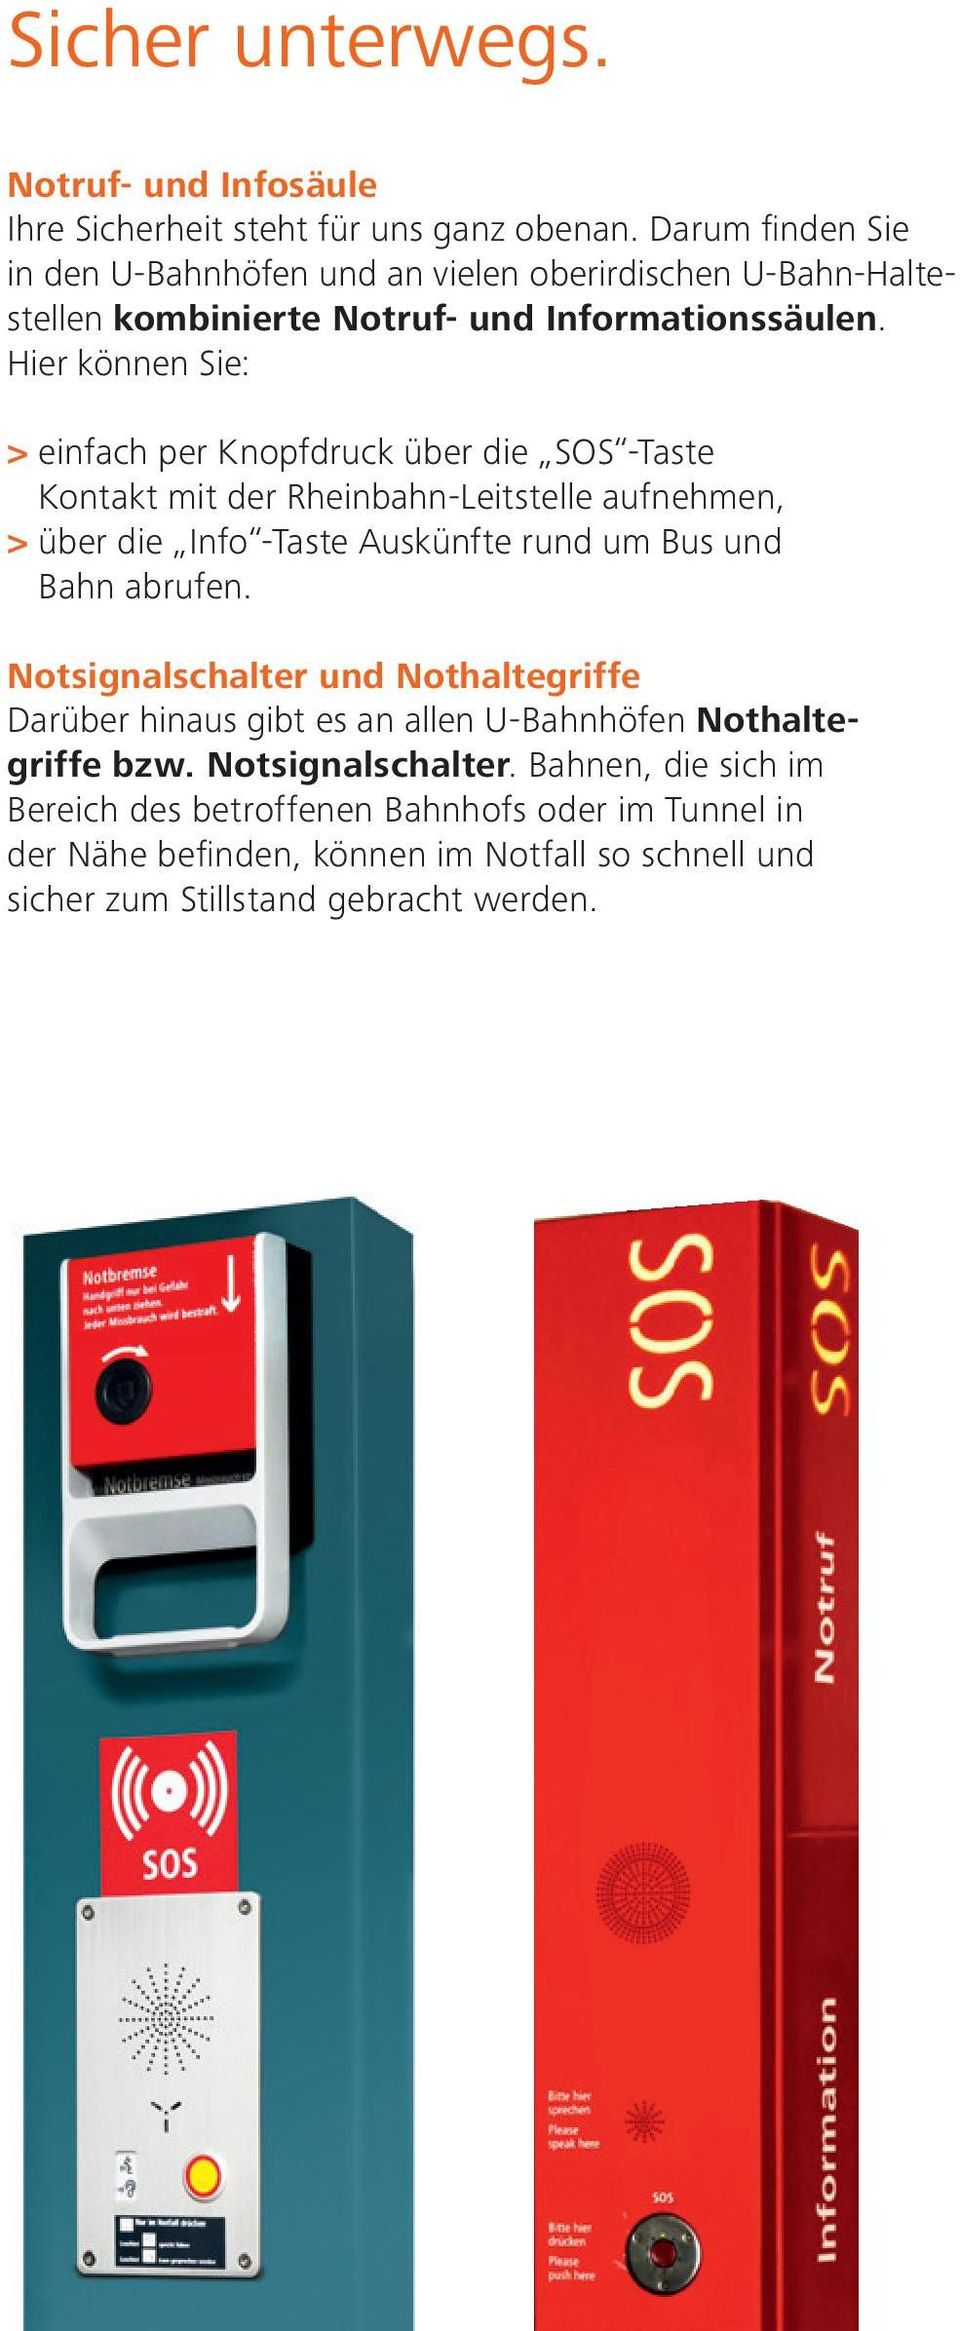 Hier können Sie: > einfach per Knopfdruck über die SOS -Taste Kontakt mit der Rheinbahn-Leitstelle aufnehmen, > über die Info -Taste Auskünfte rund um Bus und Bahn